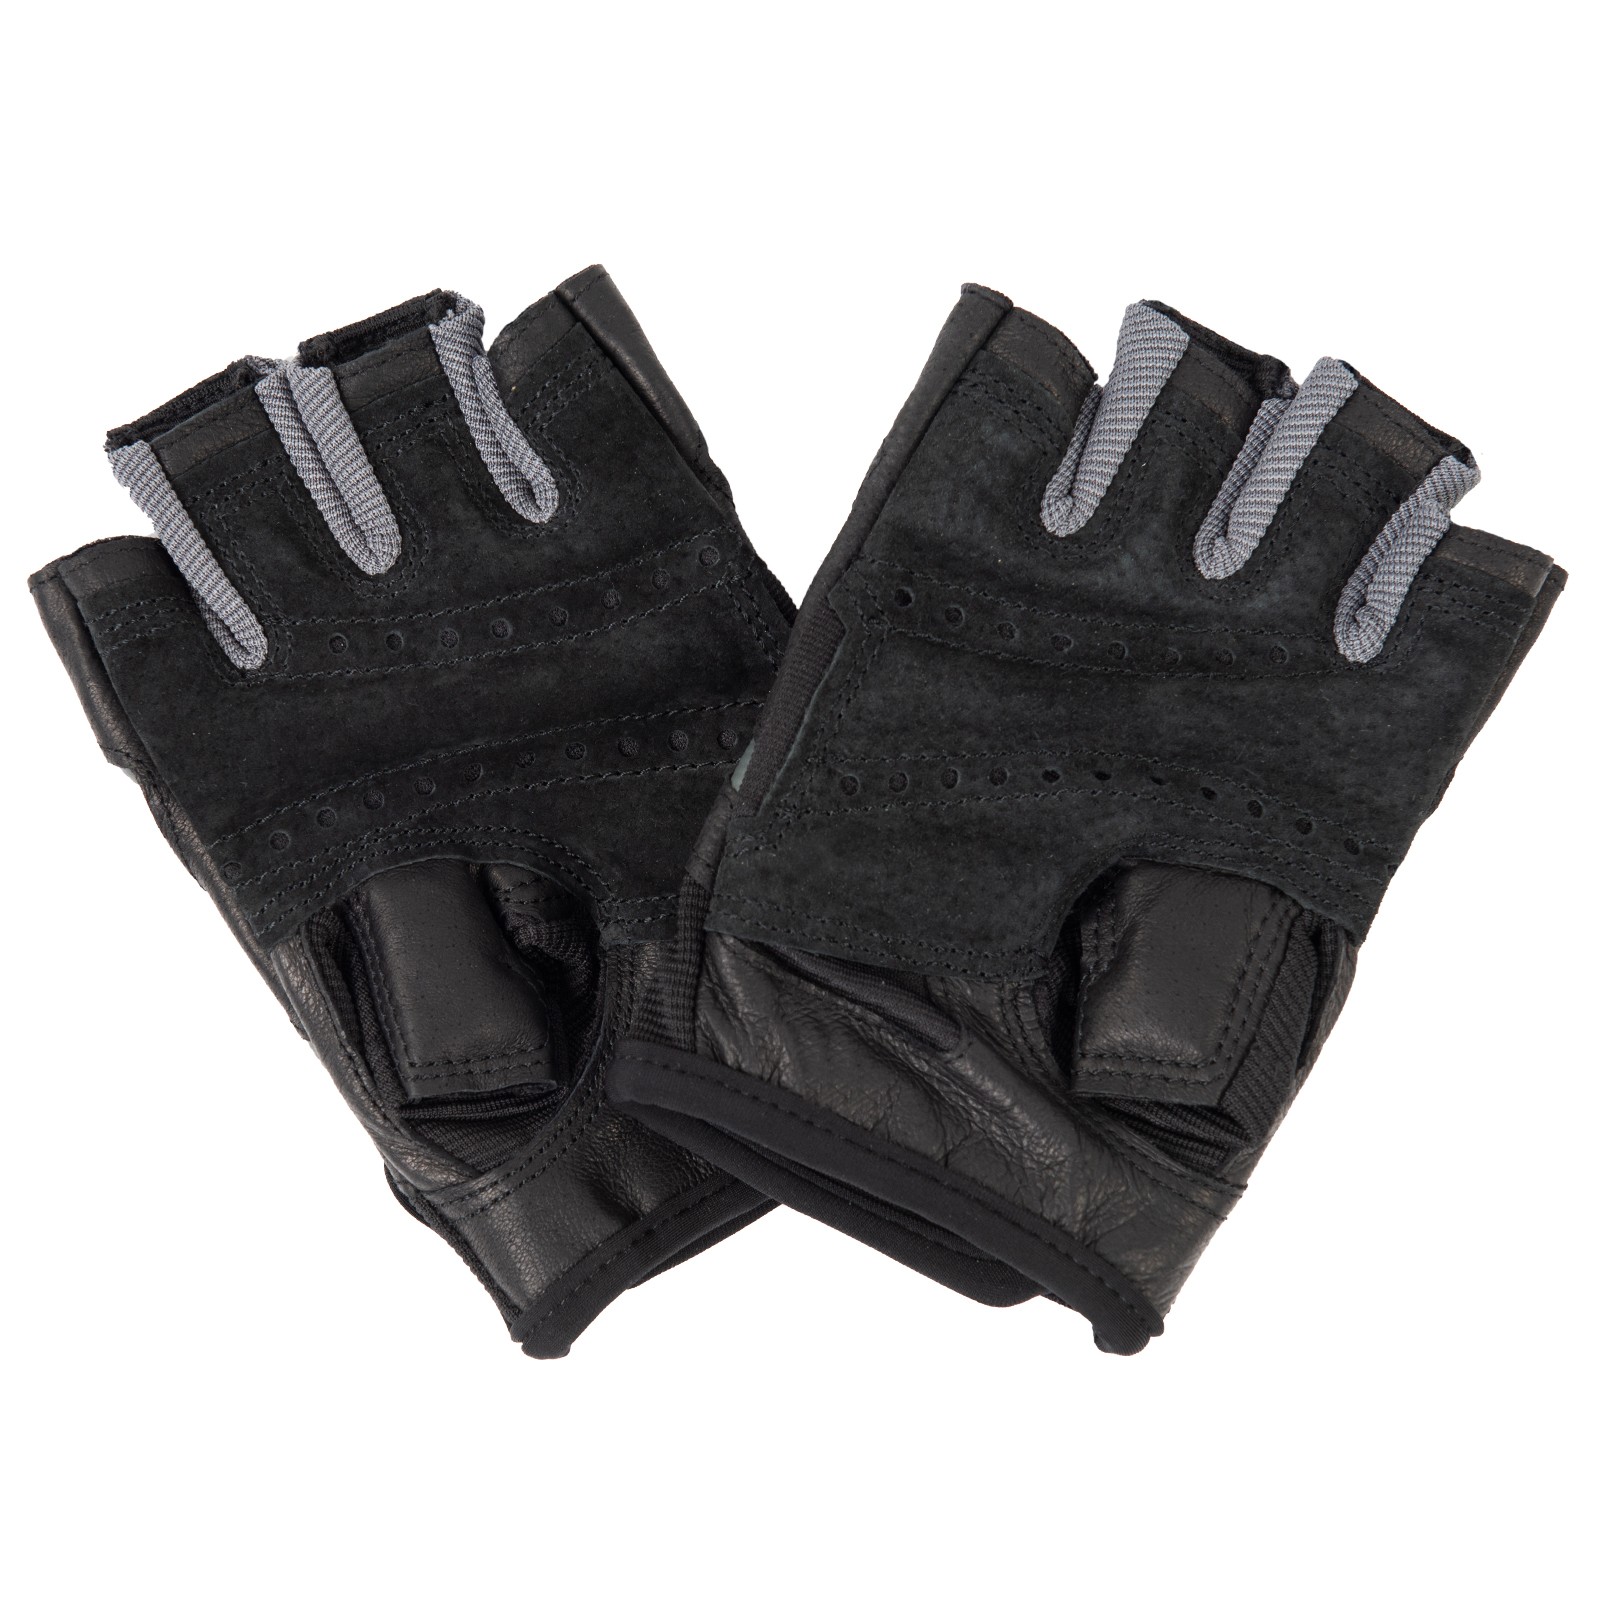 Harbinger Pro Gloves - Fitshop